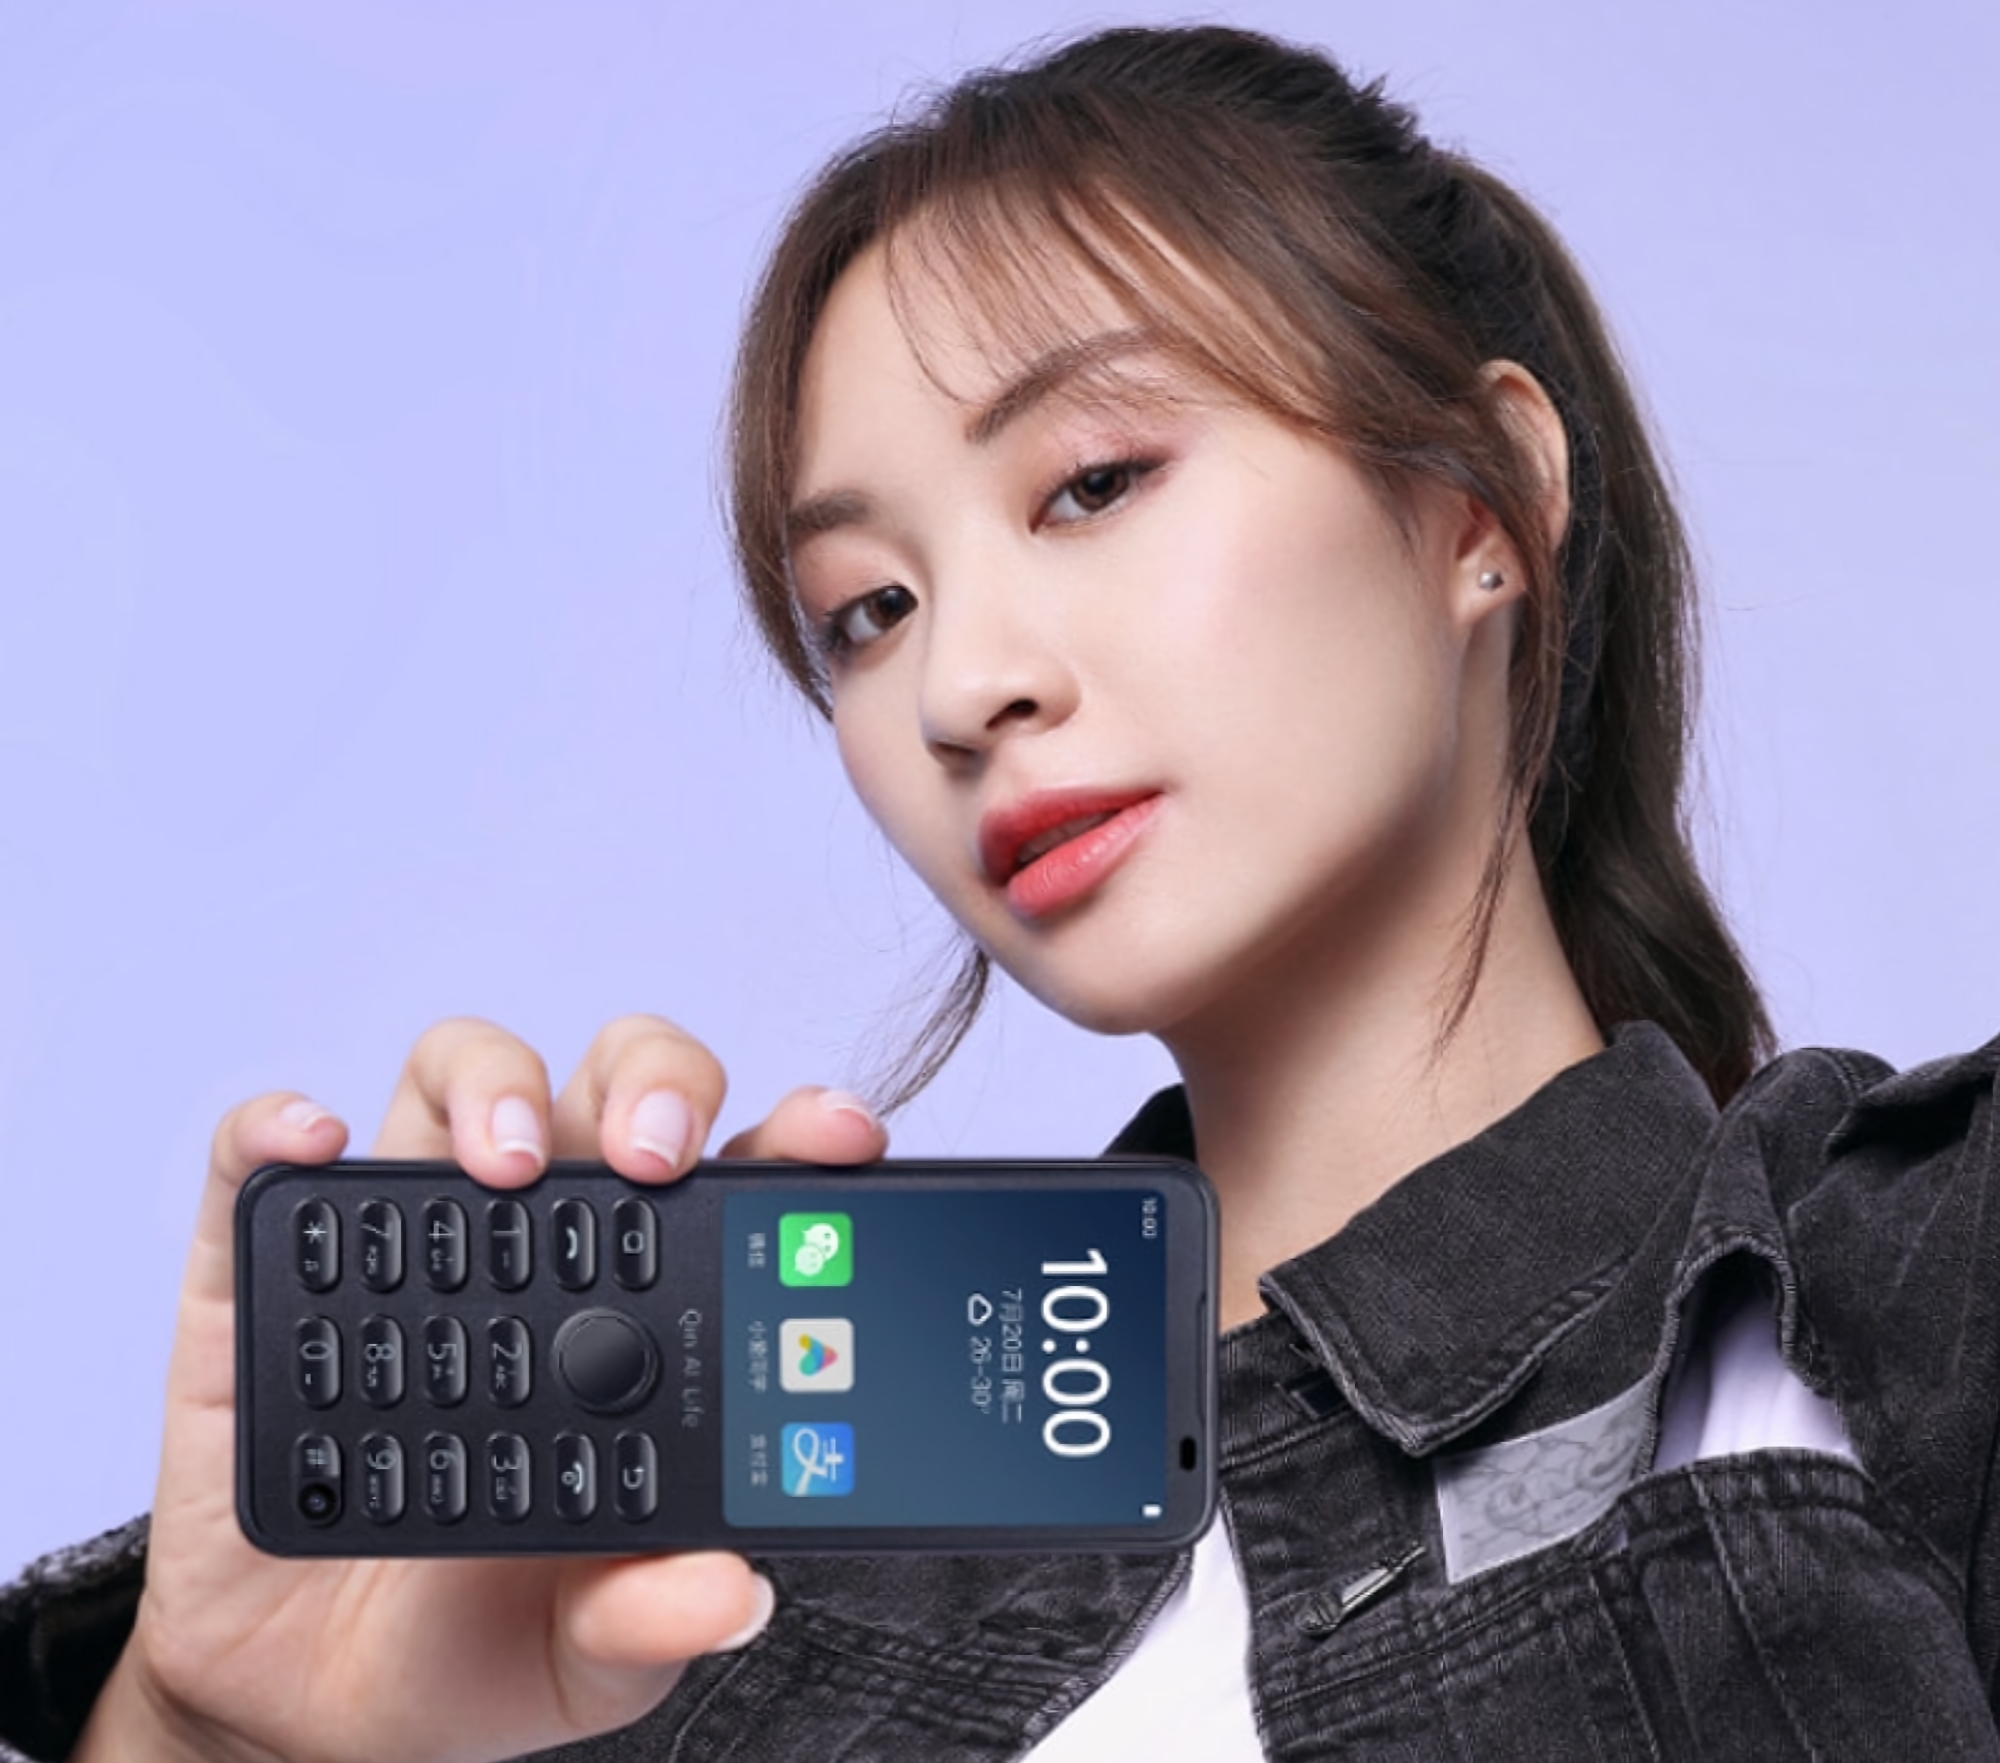 Qin F21 Pro: el teléfono de botones del ecosistema Xiaomi con pantalla de 2,8 pulgadas, Wi-Fi, cámara selfie y sistema operativo Android a bordo por 89 dólares